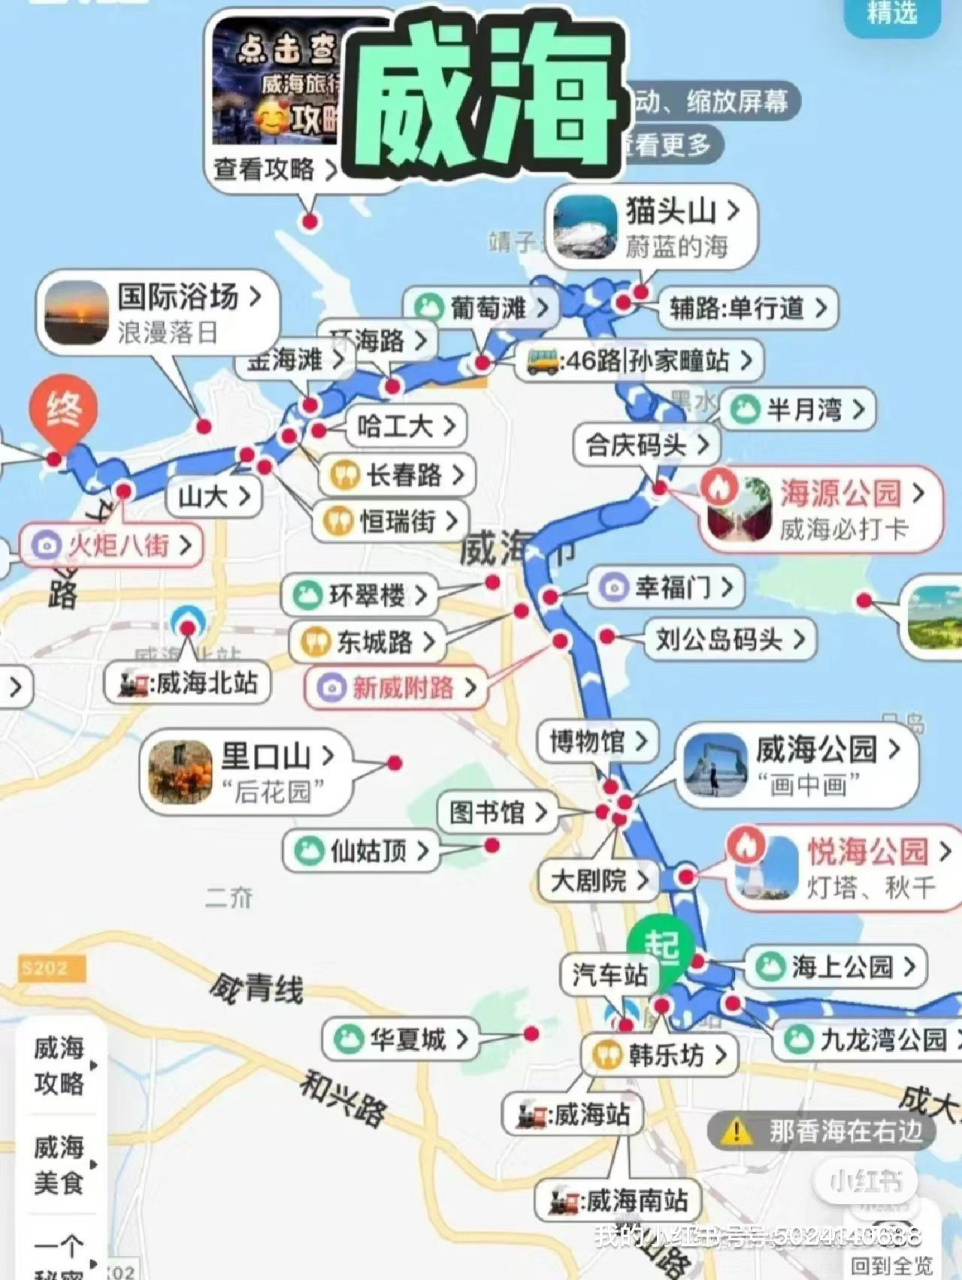 刘公岛旅游地图图片